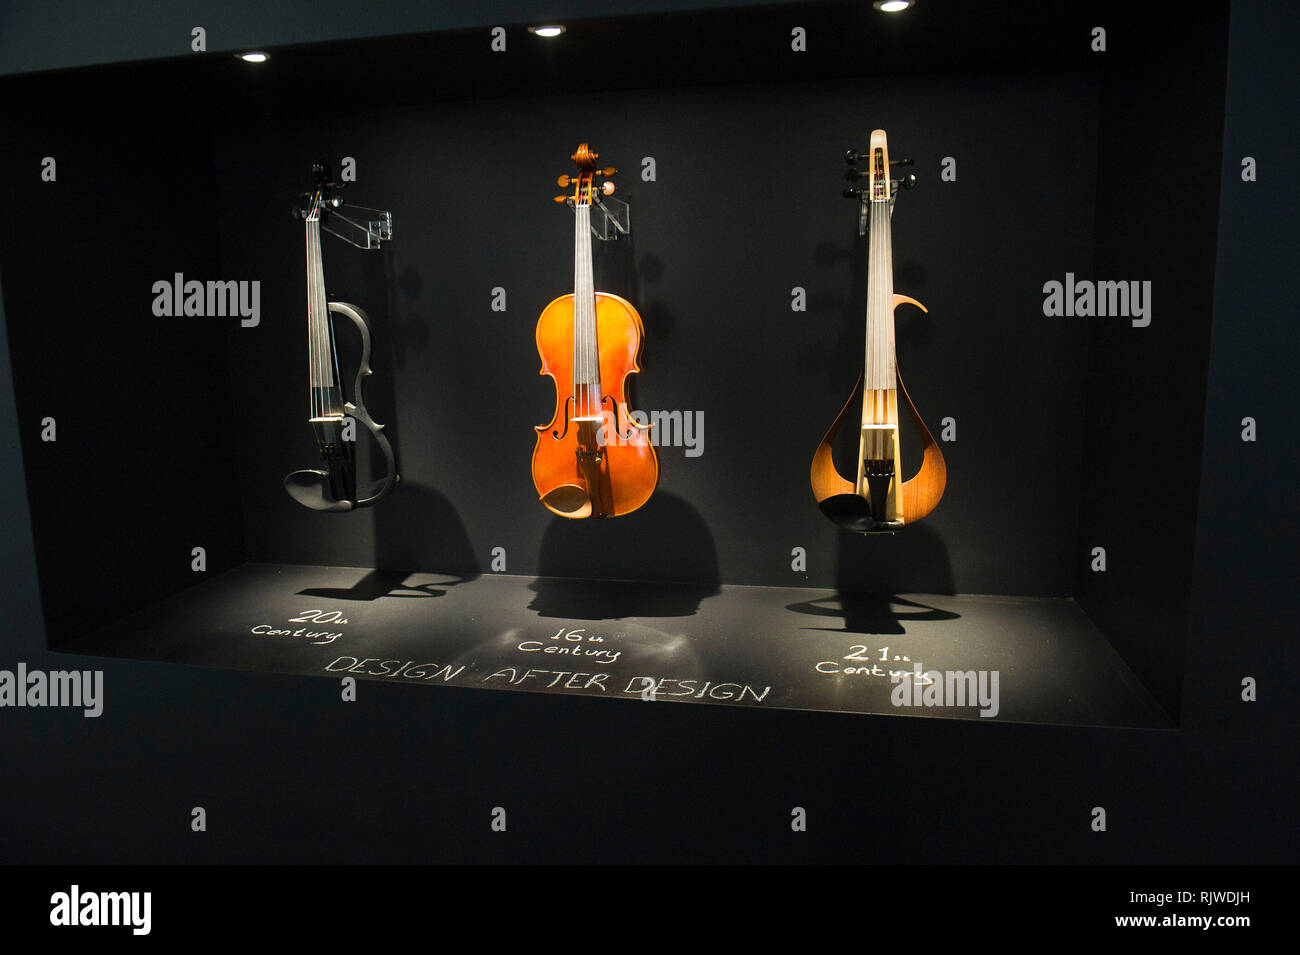 Italia Lombardía Triennale de Milán - Palazzo Turati - XXI Triennale Design - miusical modernos instrumentos. Diseño de Yamaha Exibition - & Joy Foto de stock